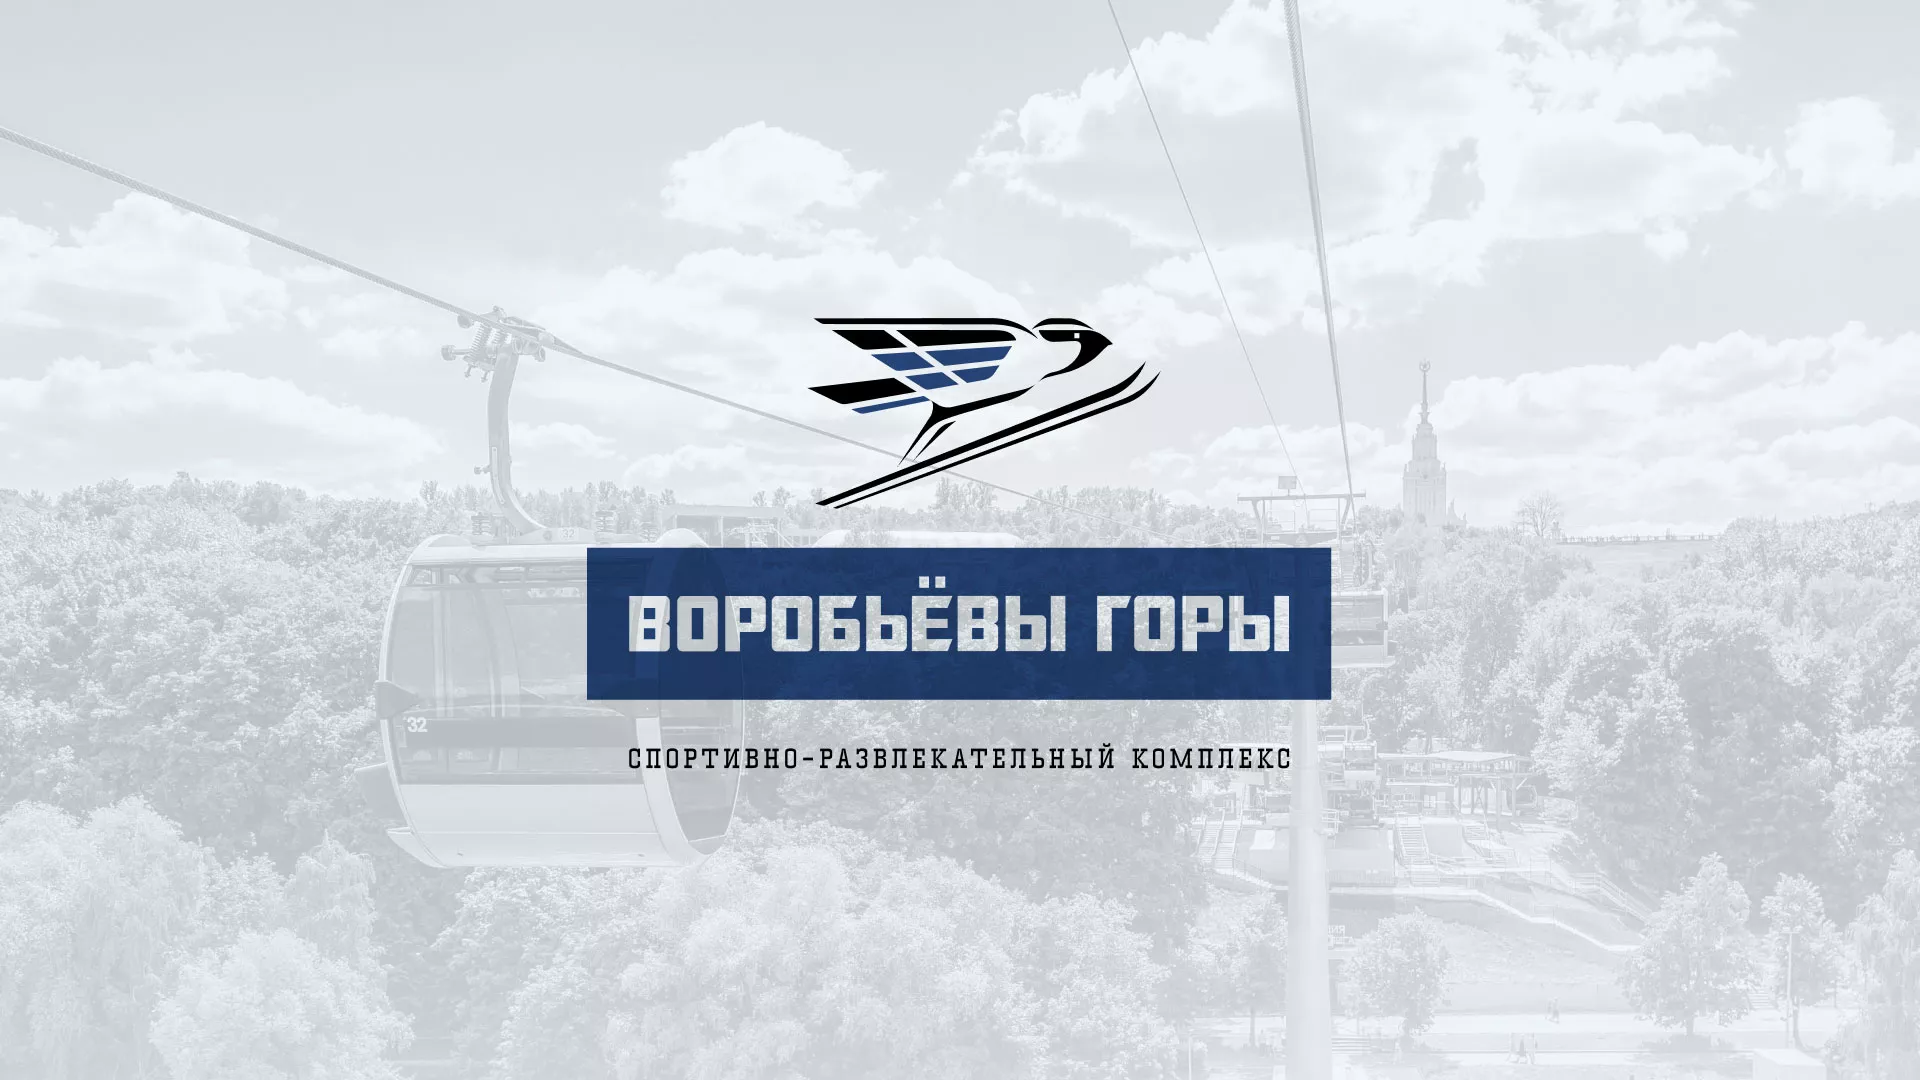 Разработка сайта в Спасске-Рязанском для спортивно-развлекательного комплекса «Воробьёвы горы»